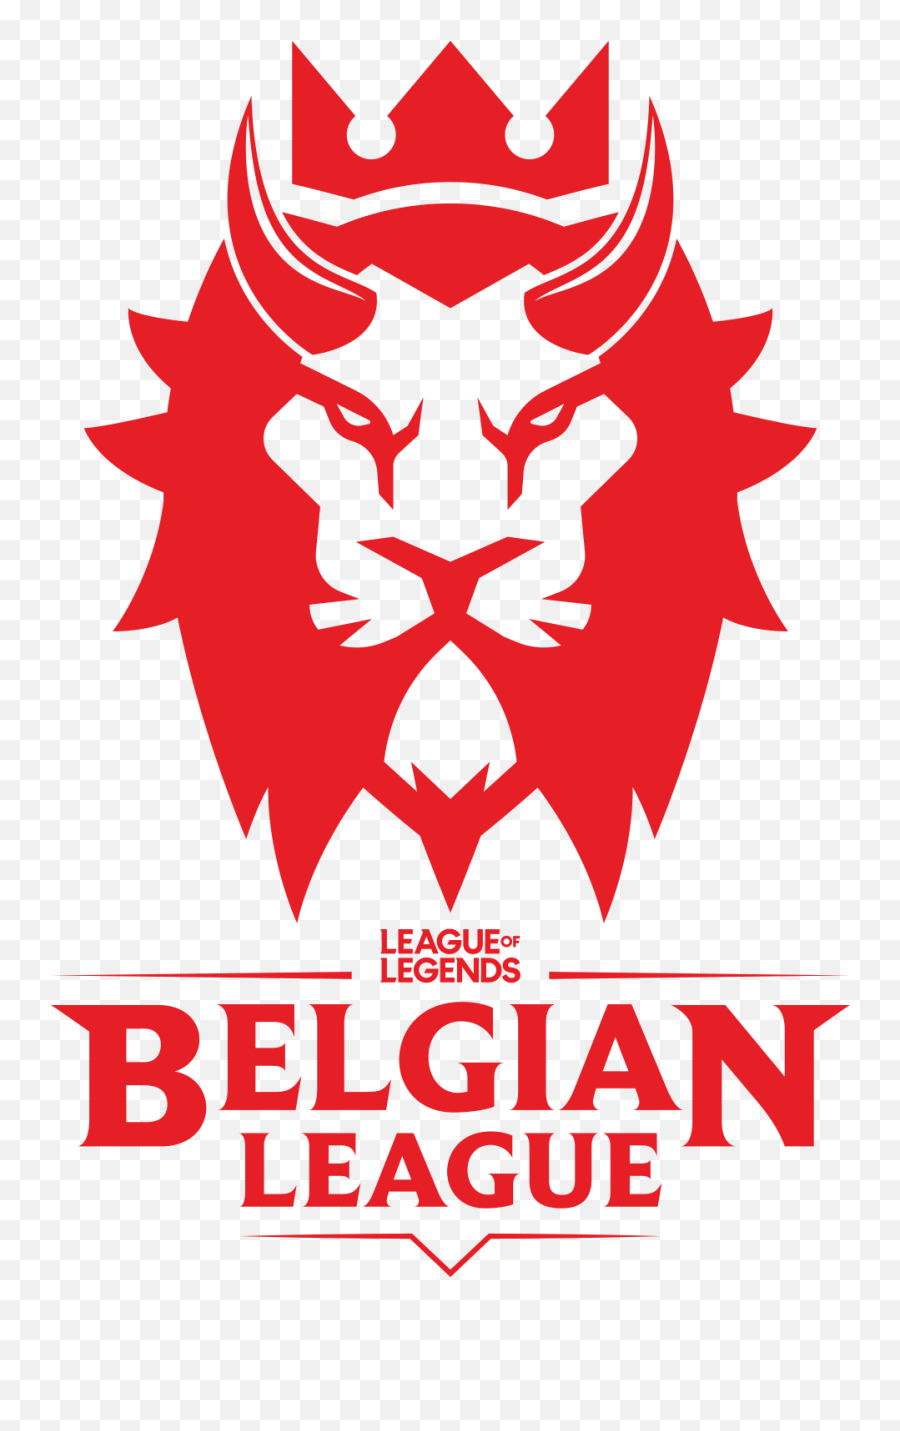 Belgian League 2020 Country Finals - Leaguepedia League Of Ibirapuera Park Png,League Of Legends Logo Png